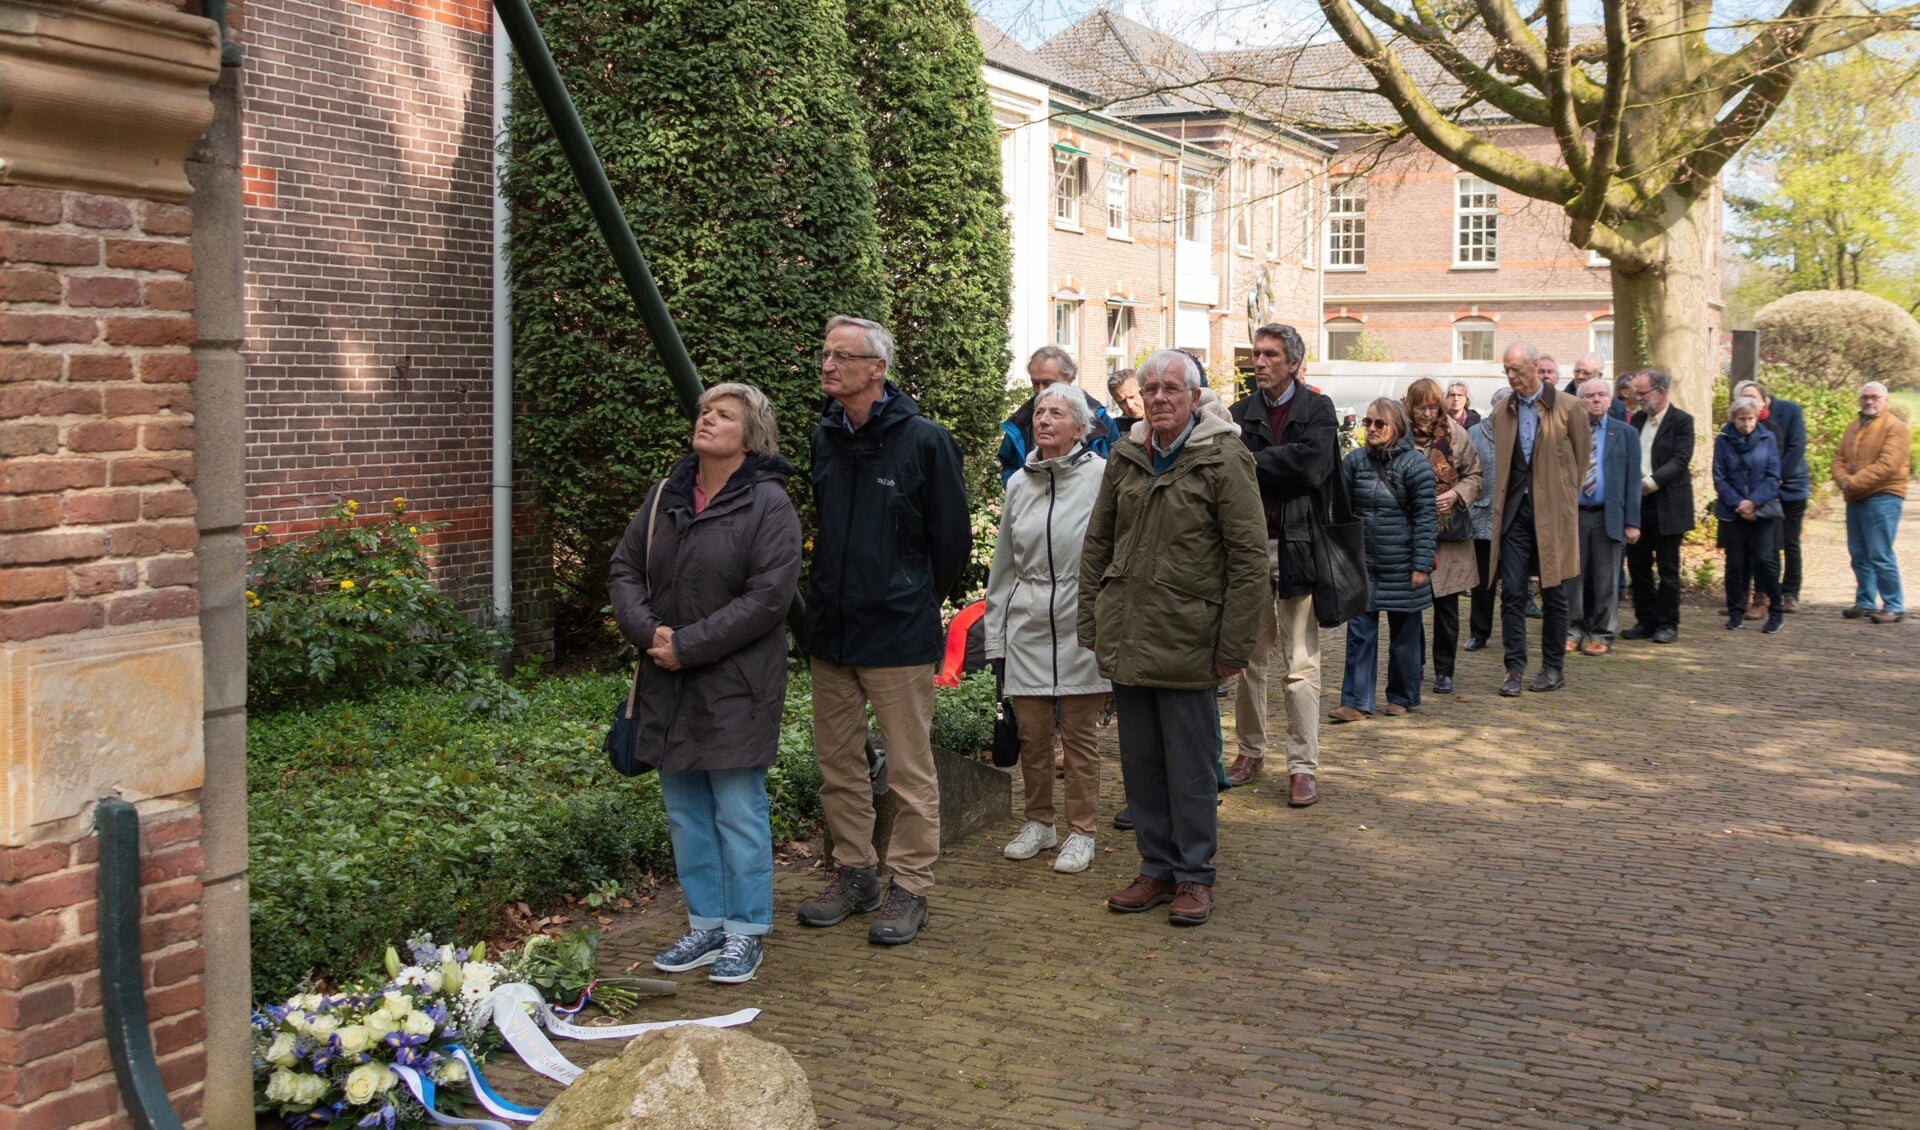 Bezoekers lopen langs de plaquette, waaronder bloemen zijn neergelegd. Foto: Henk Derksen